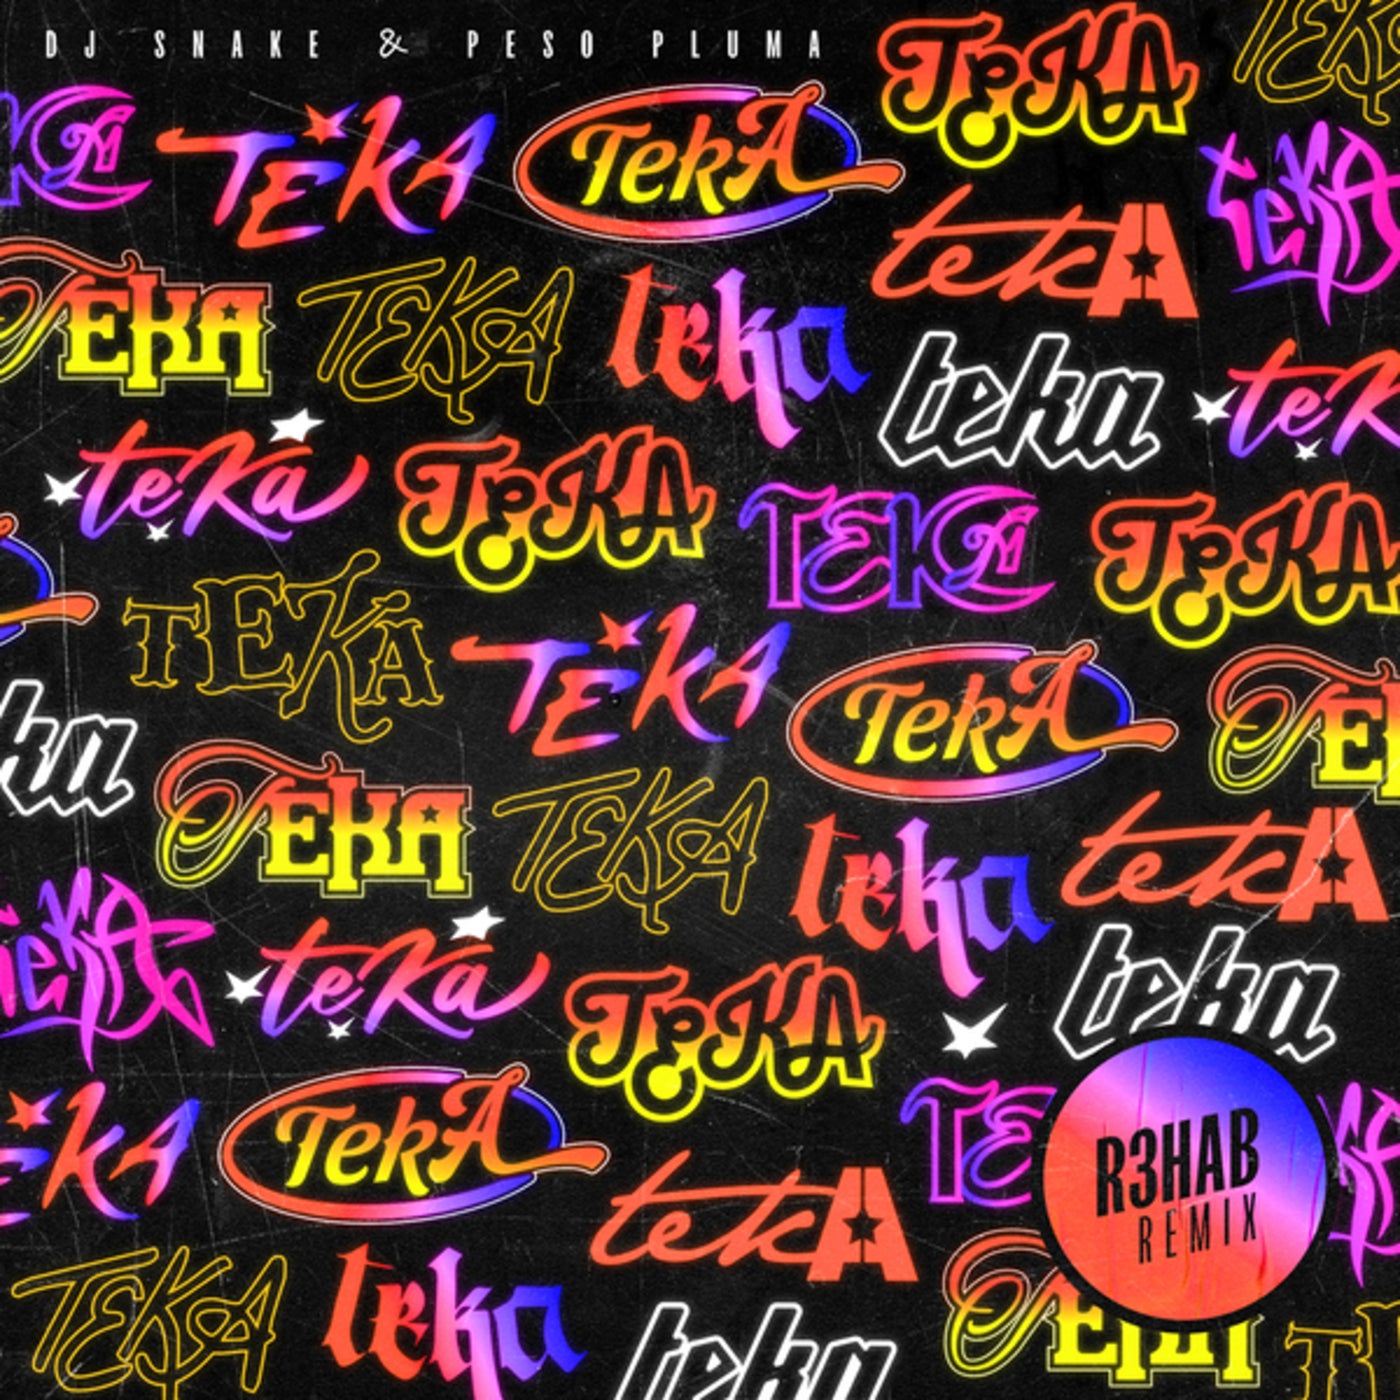 Teka (R3HAB Extended Mix)